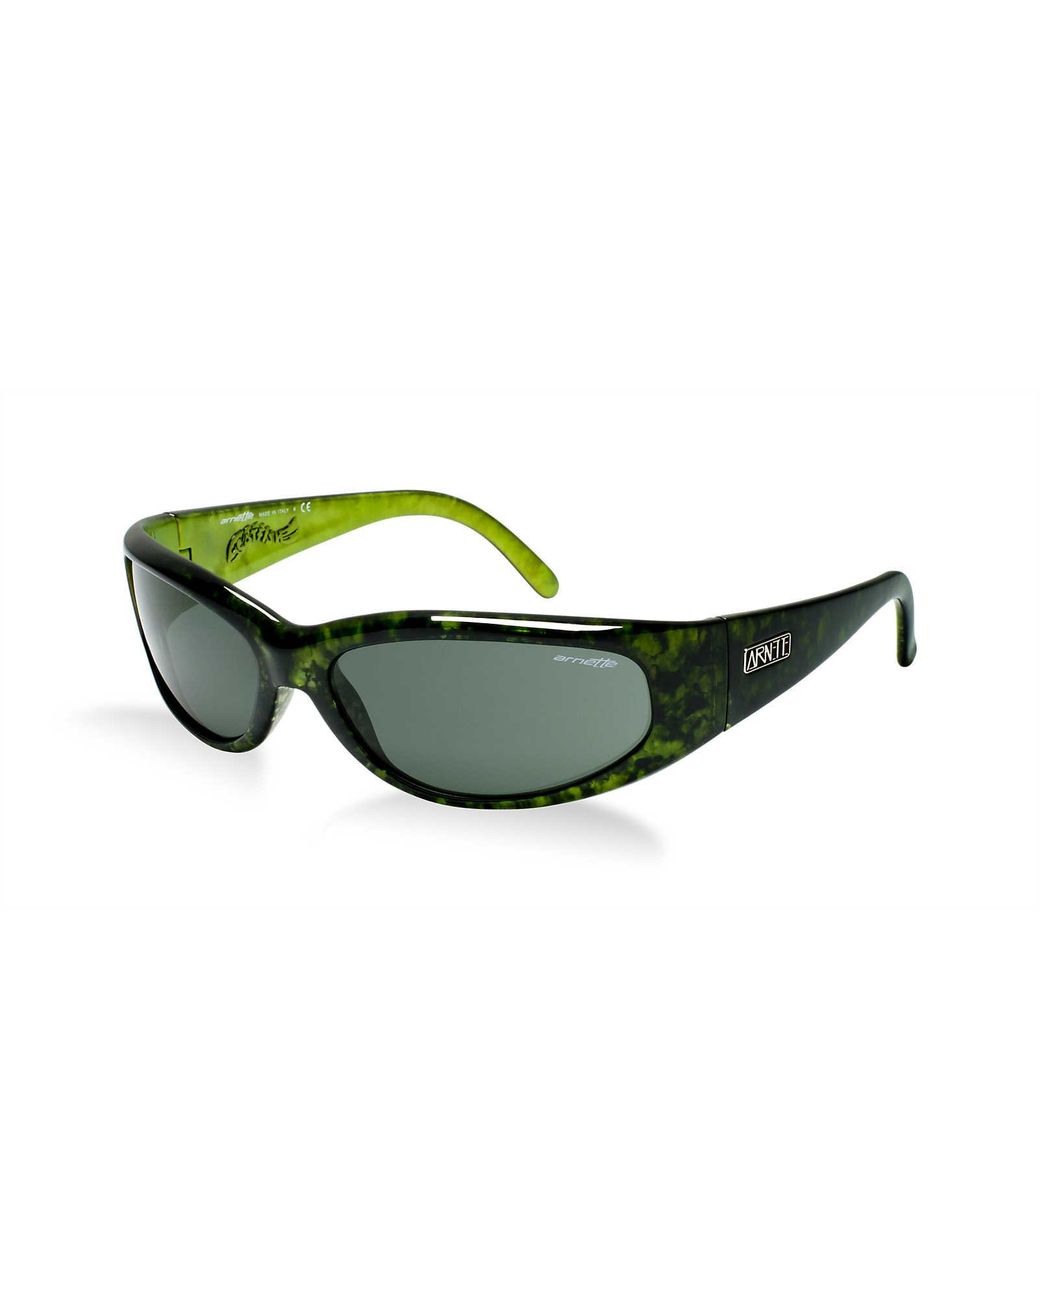 Discover 153+ arnette catfish sunglasses best